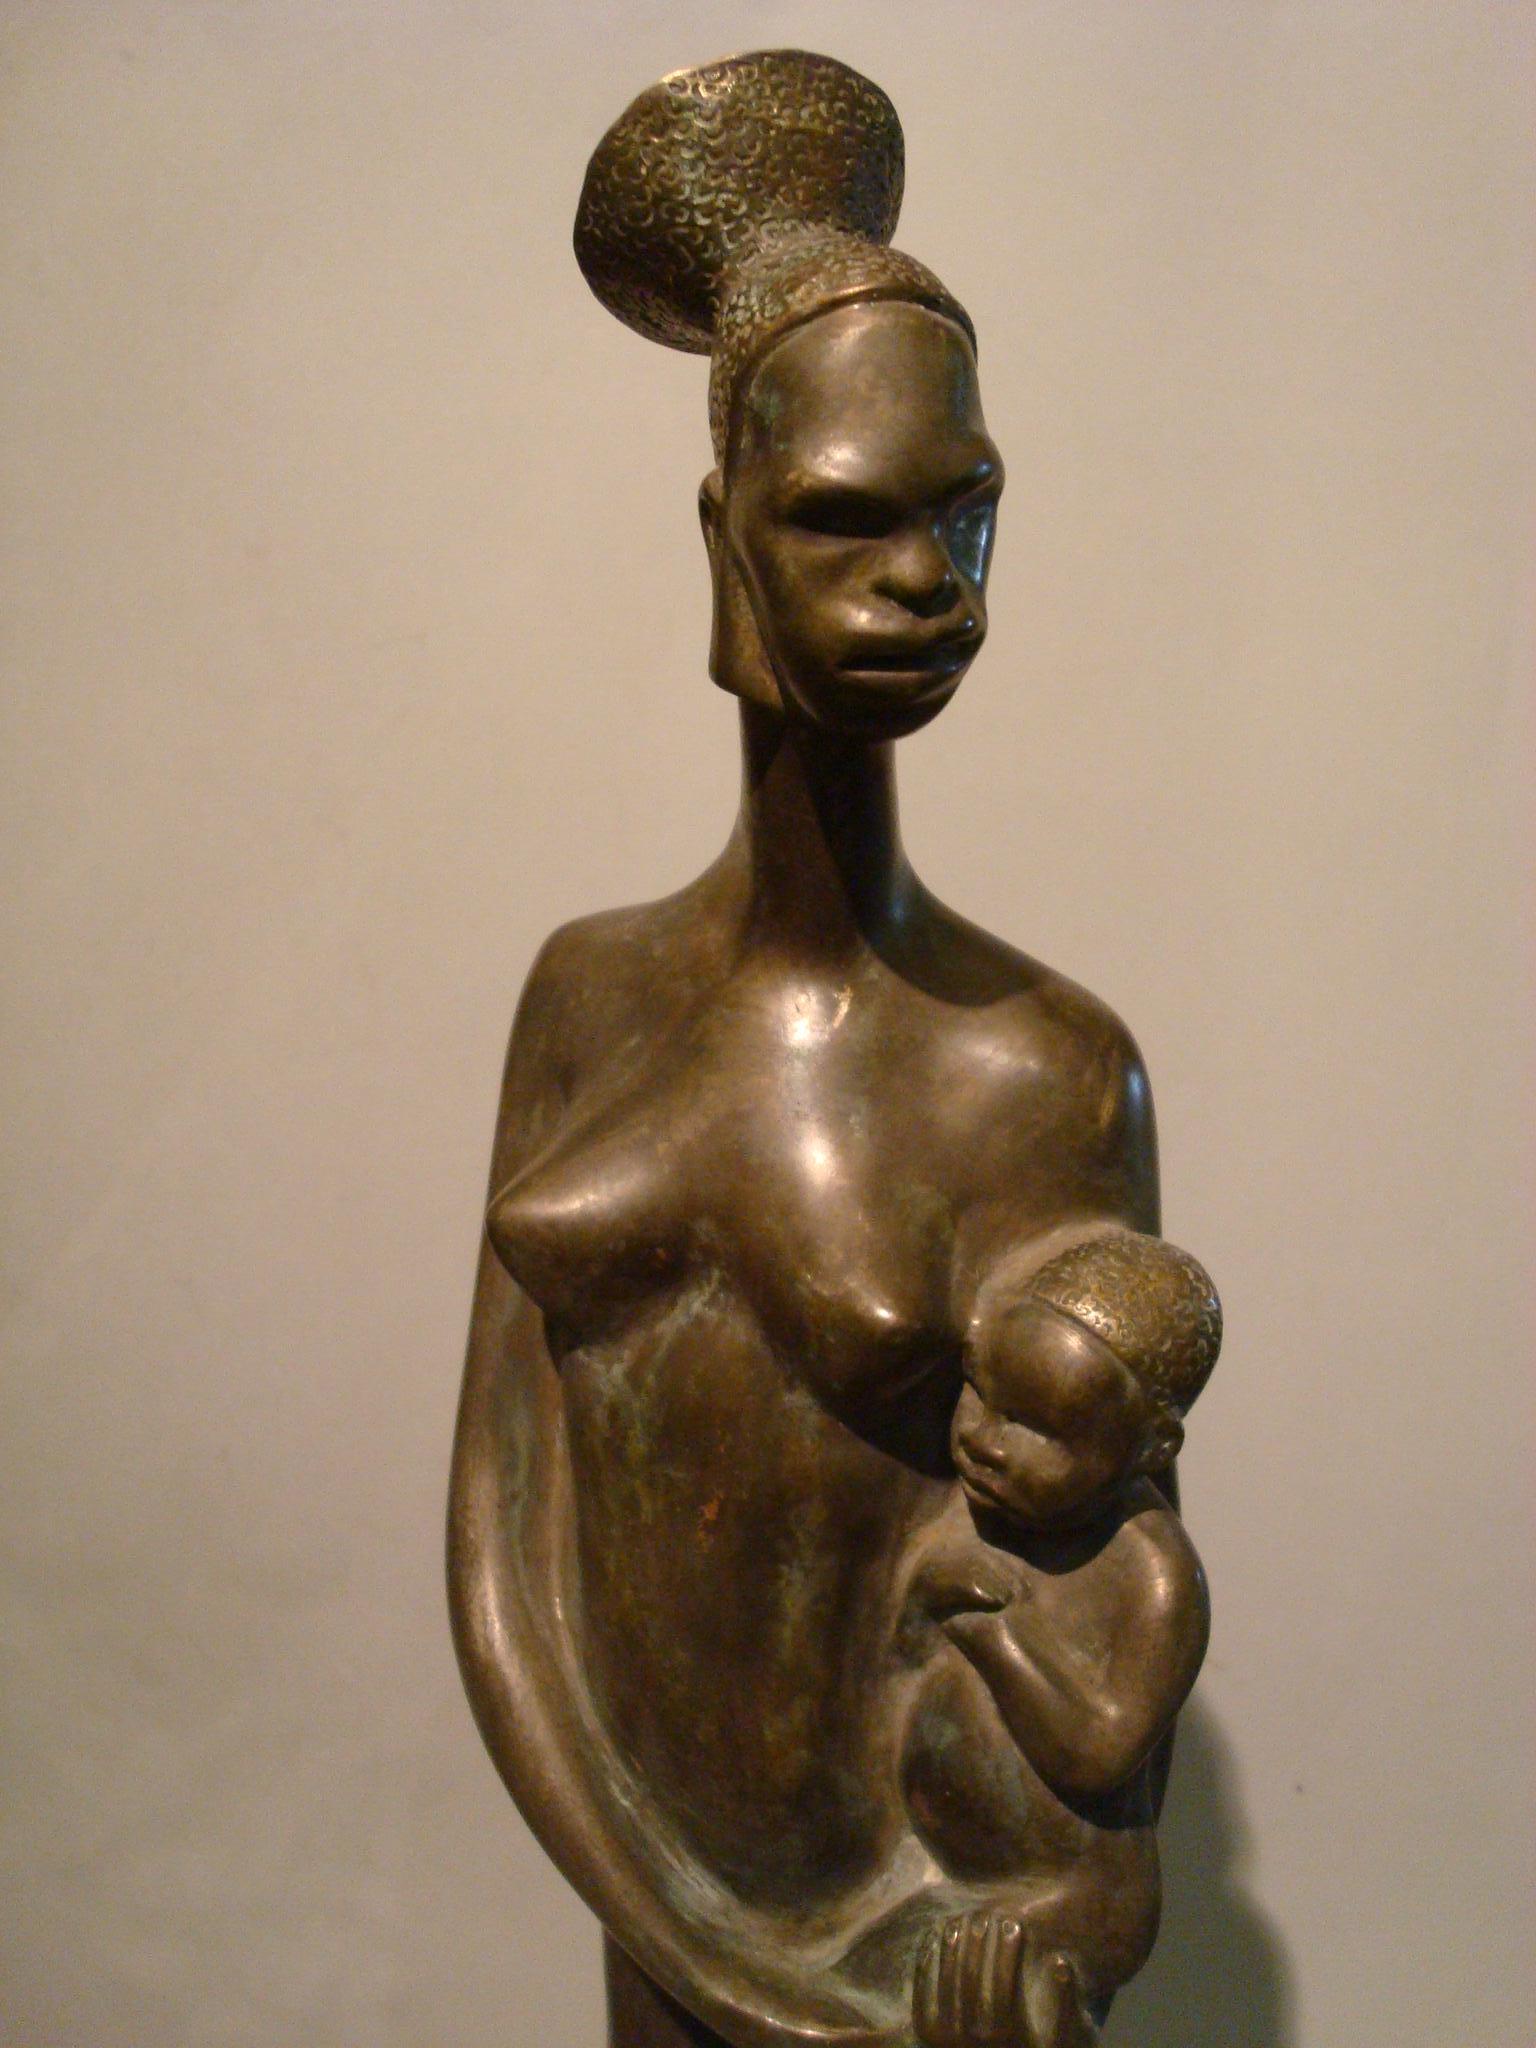 Grande femme africaine nue Art Déco avec un enfant dans les bras. France, années 1920
Sculpture en bronze Art déco d'une femme africaine.